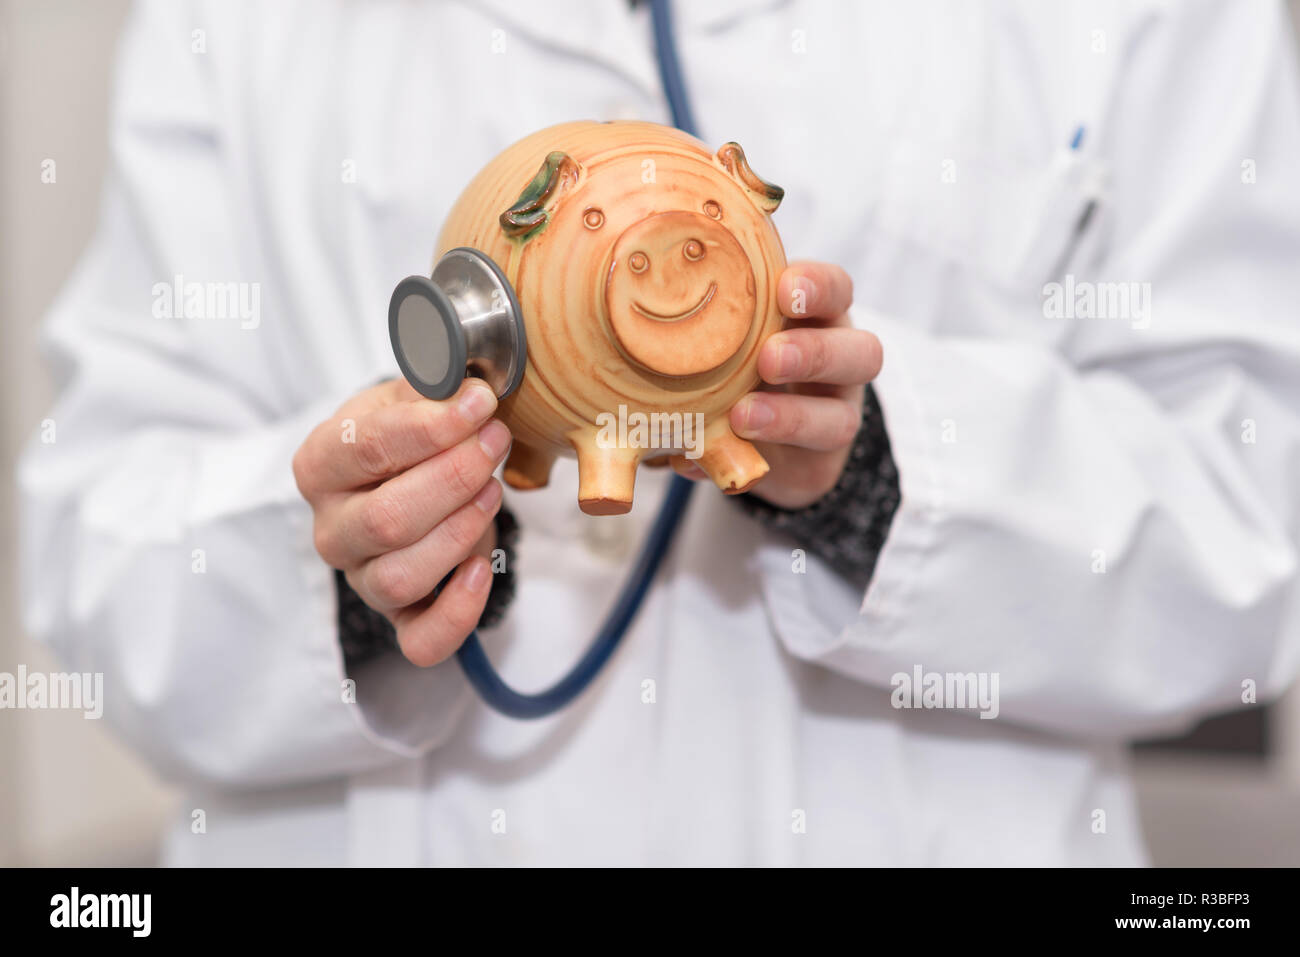 Medico tenendo salvadanaio close up. Assicurazione medica e sanitaria concetto di denaro. Foto Stock